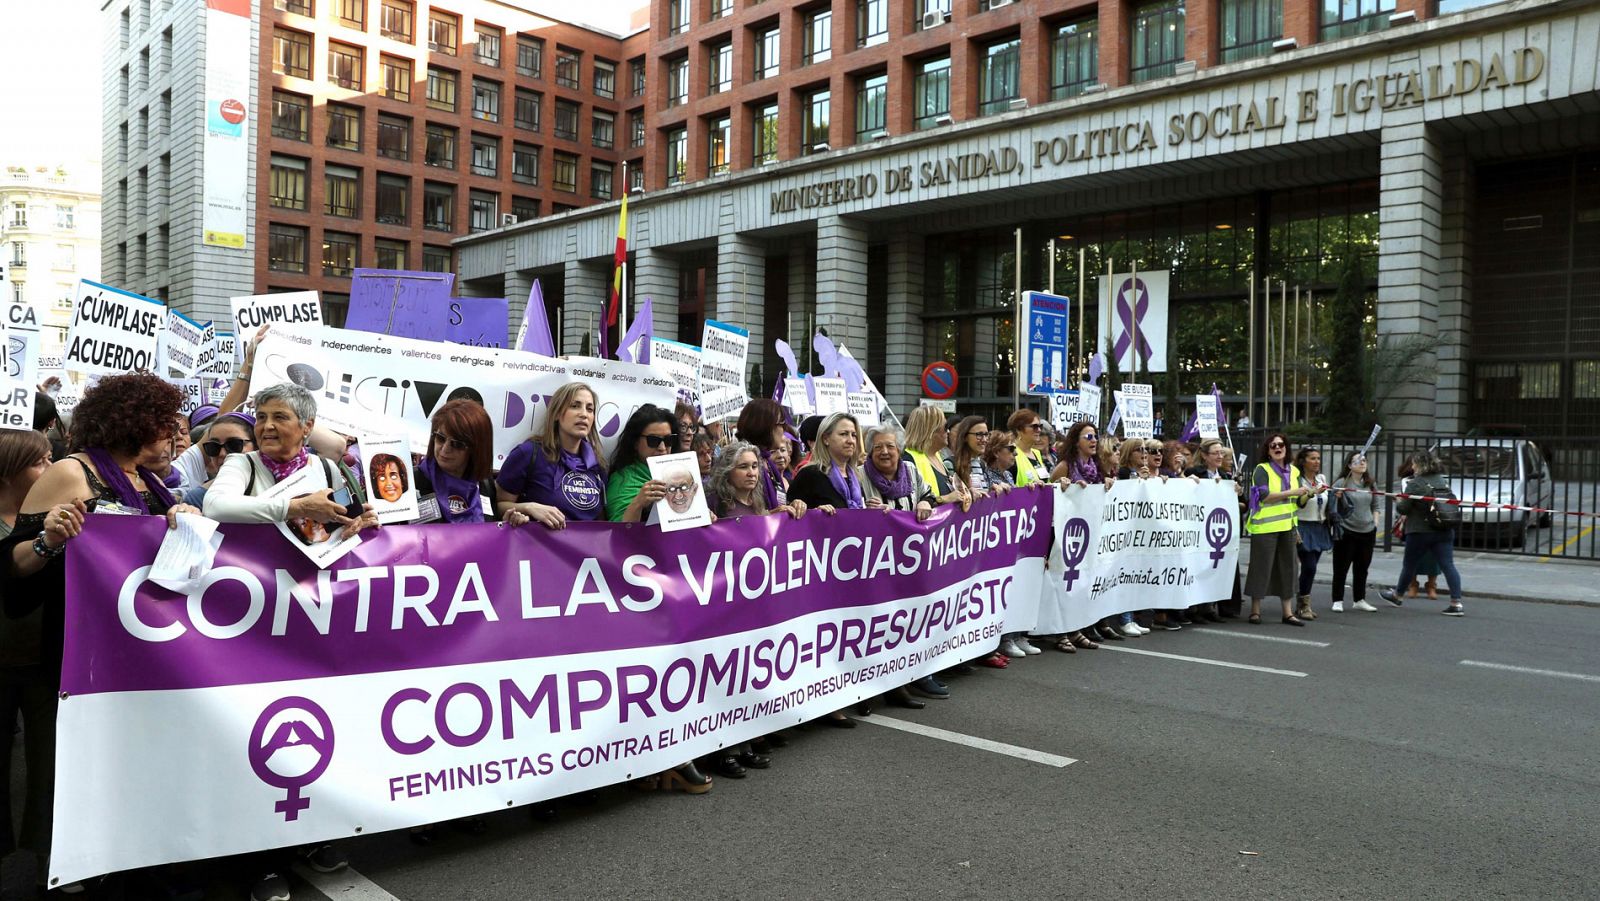 Momento de la cabecera de la manifestación de Madrid pasando por el Ministerio de Sanidad, Política Social e Igualdad